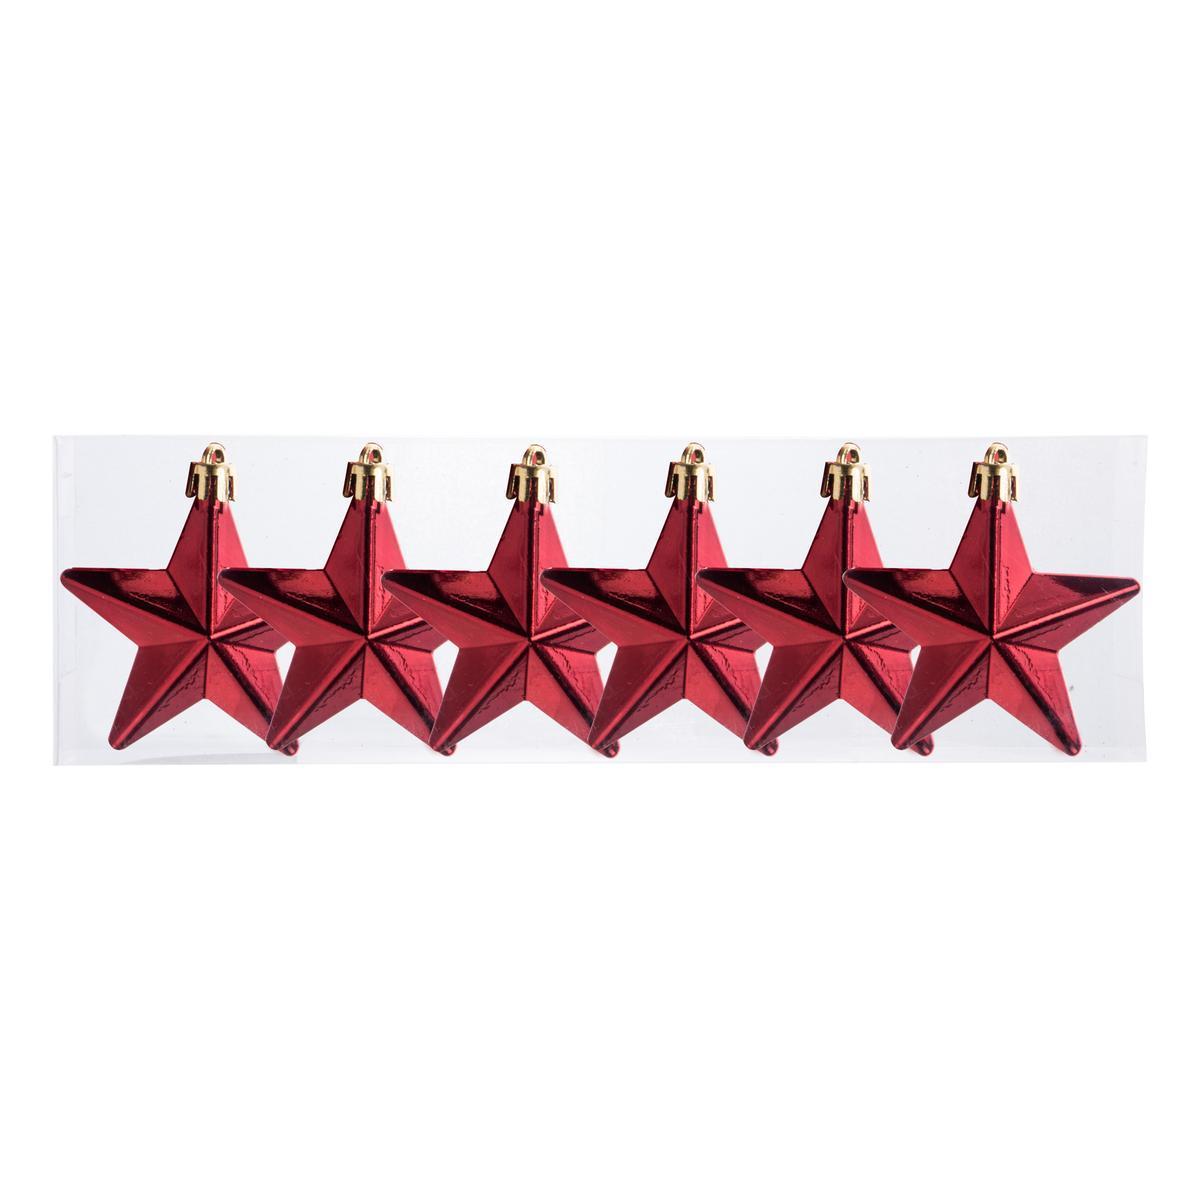 6 suspensions étoile - ø 6.5 cm - Rouge, or